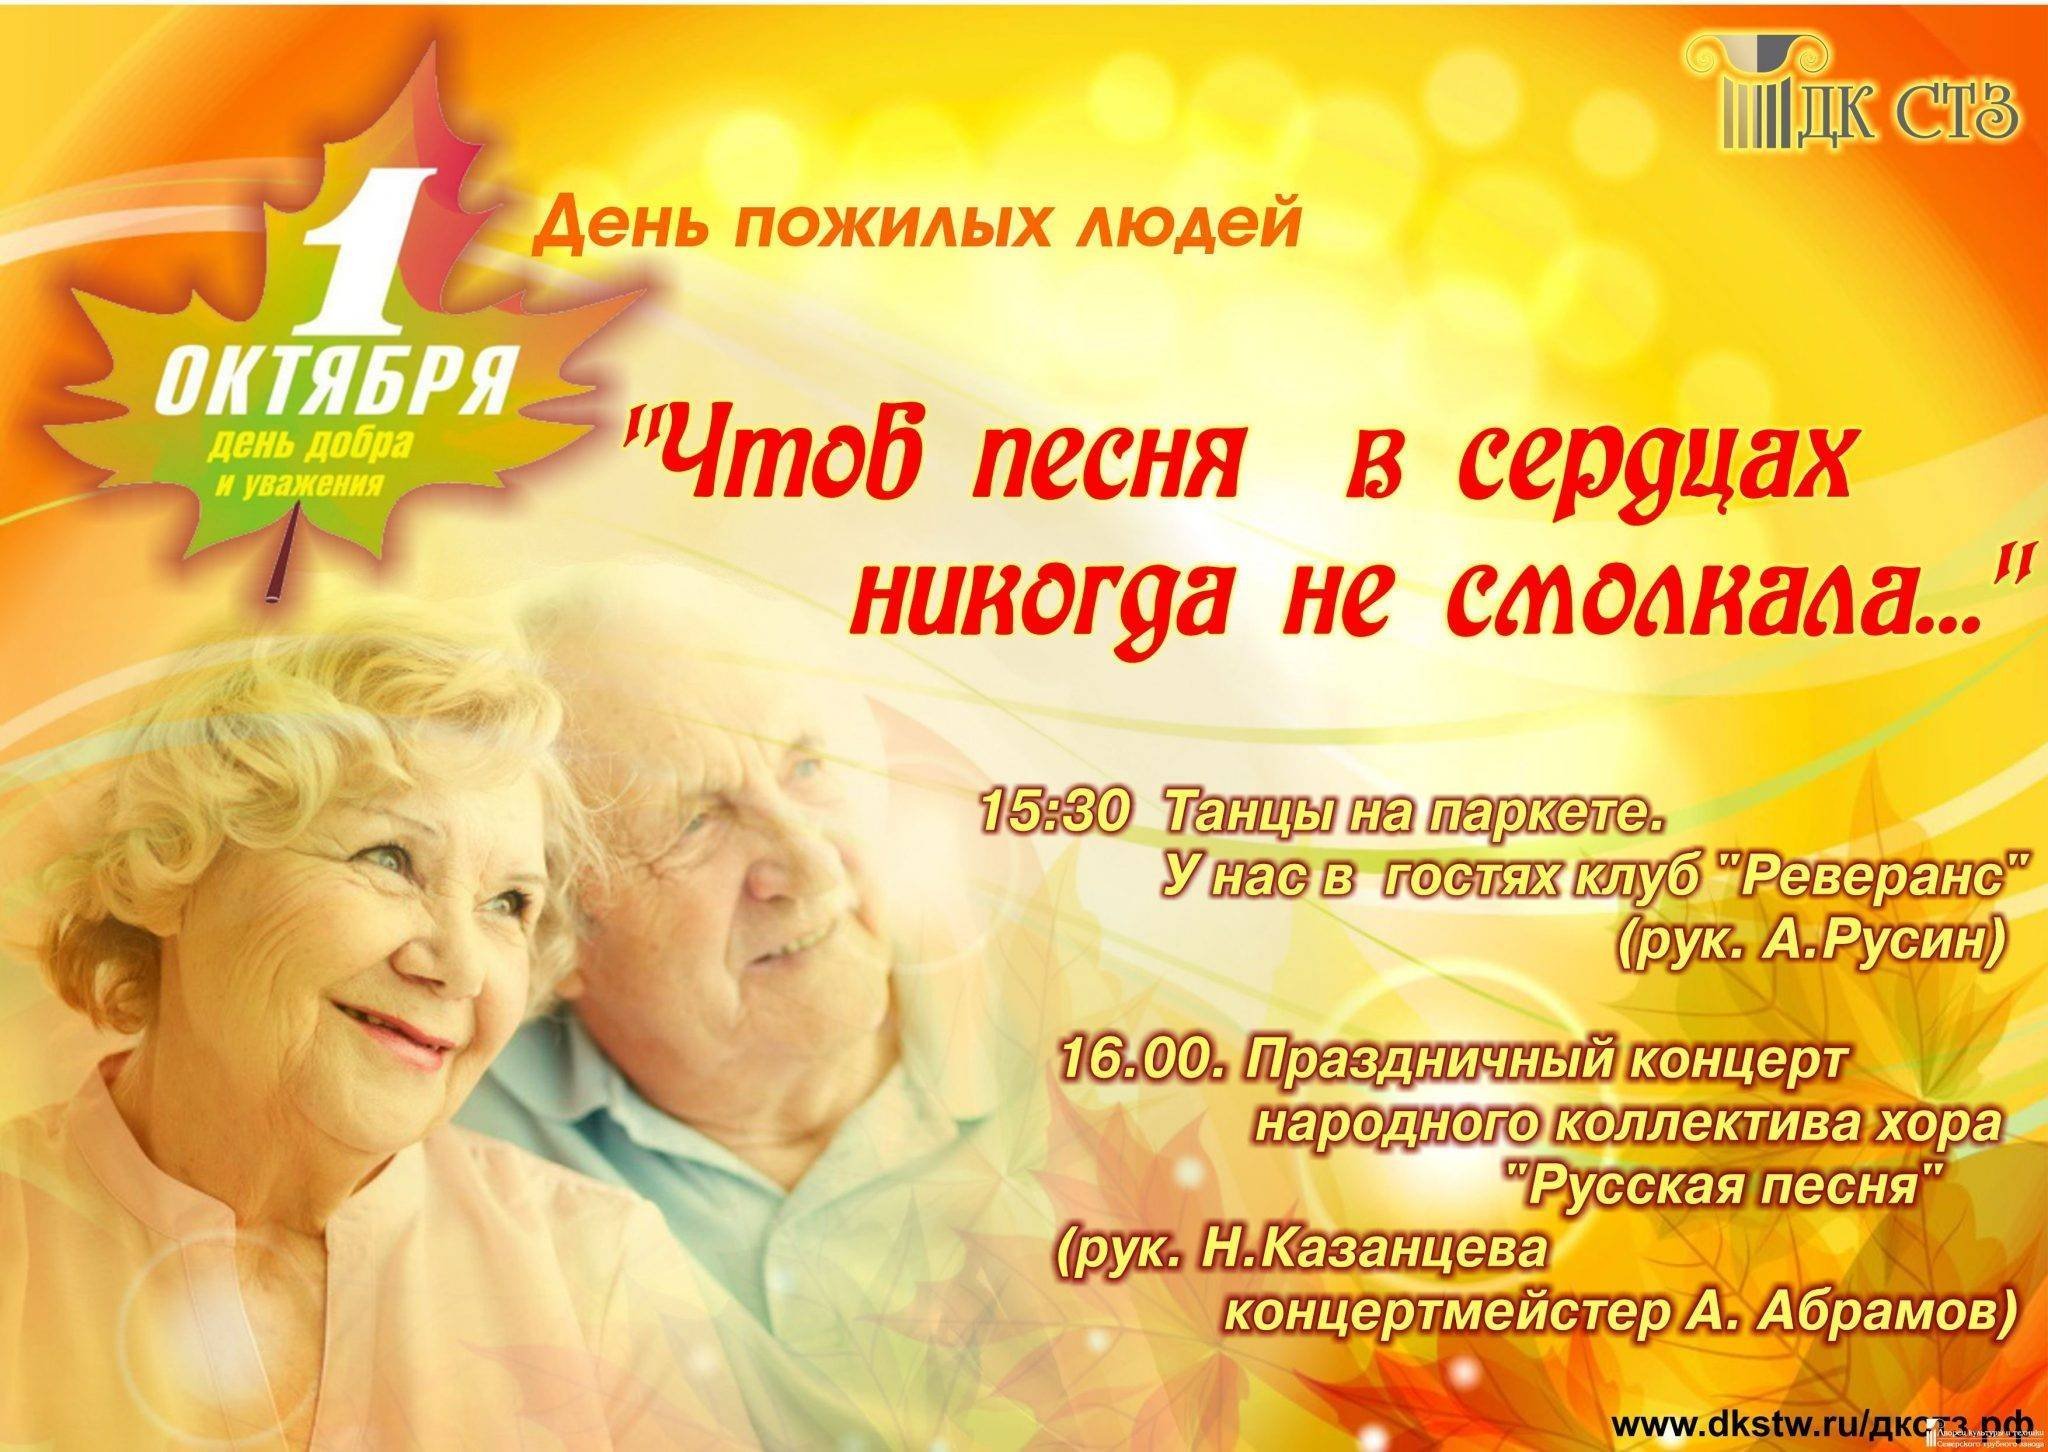 Праздника день пожилых людей. День пожилых. Поздравление с днем пожилого человека. Пожелания на день пожилых людей. Праздник день пожилого человека.